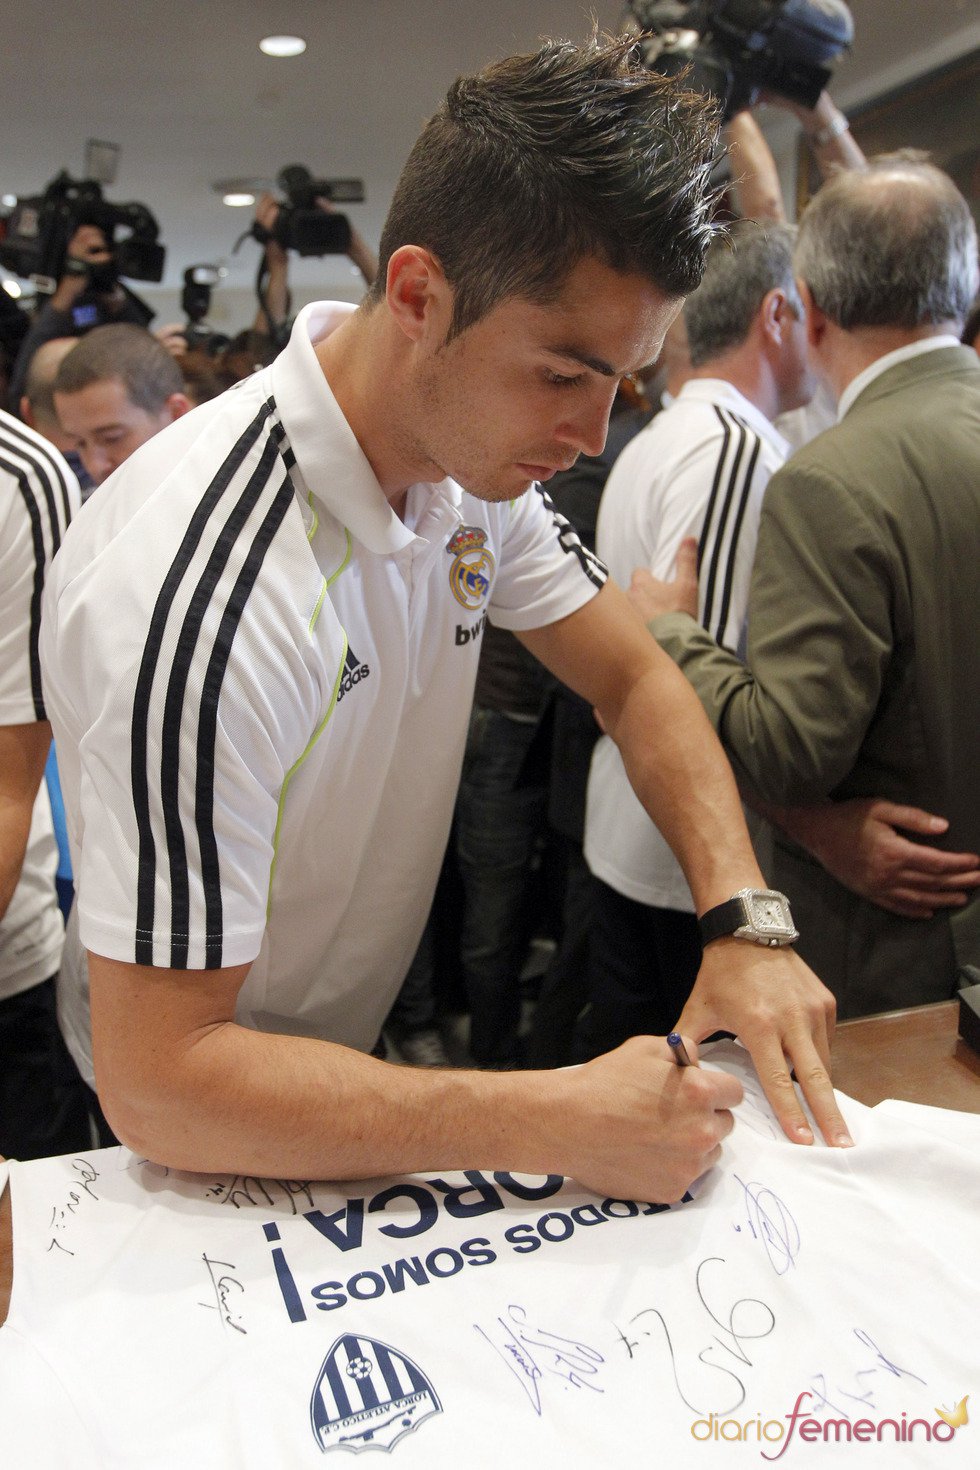 ¿Qué significa la firma de Cristiano Ronaldo?